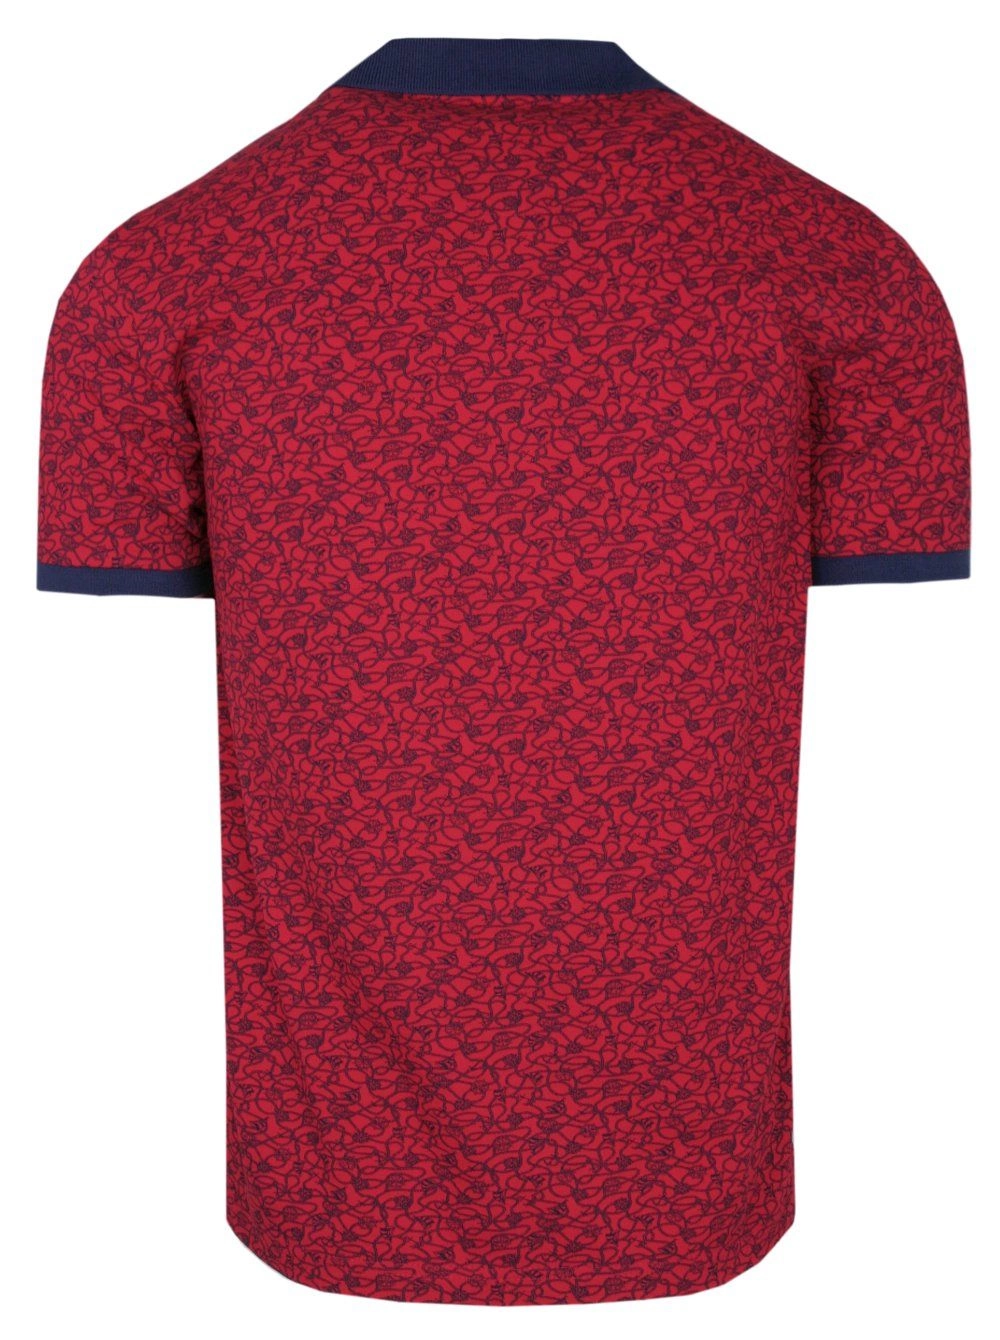 Koszulka POLO, Czerwona w Koła Sterowe, Żaglówki, Męska, Krótki Rękaw, T-shirt 